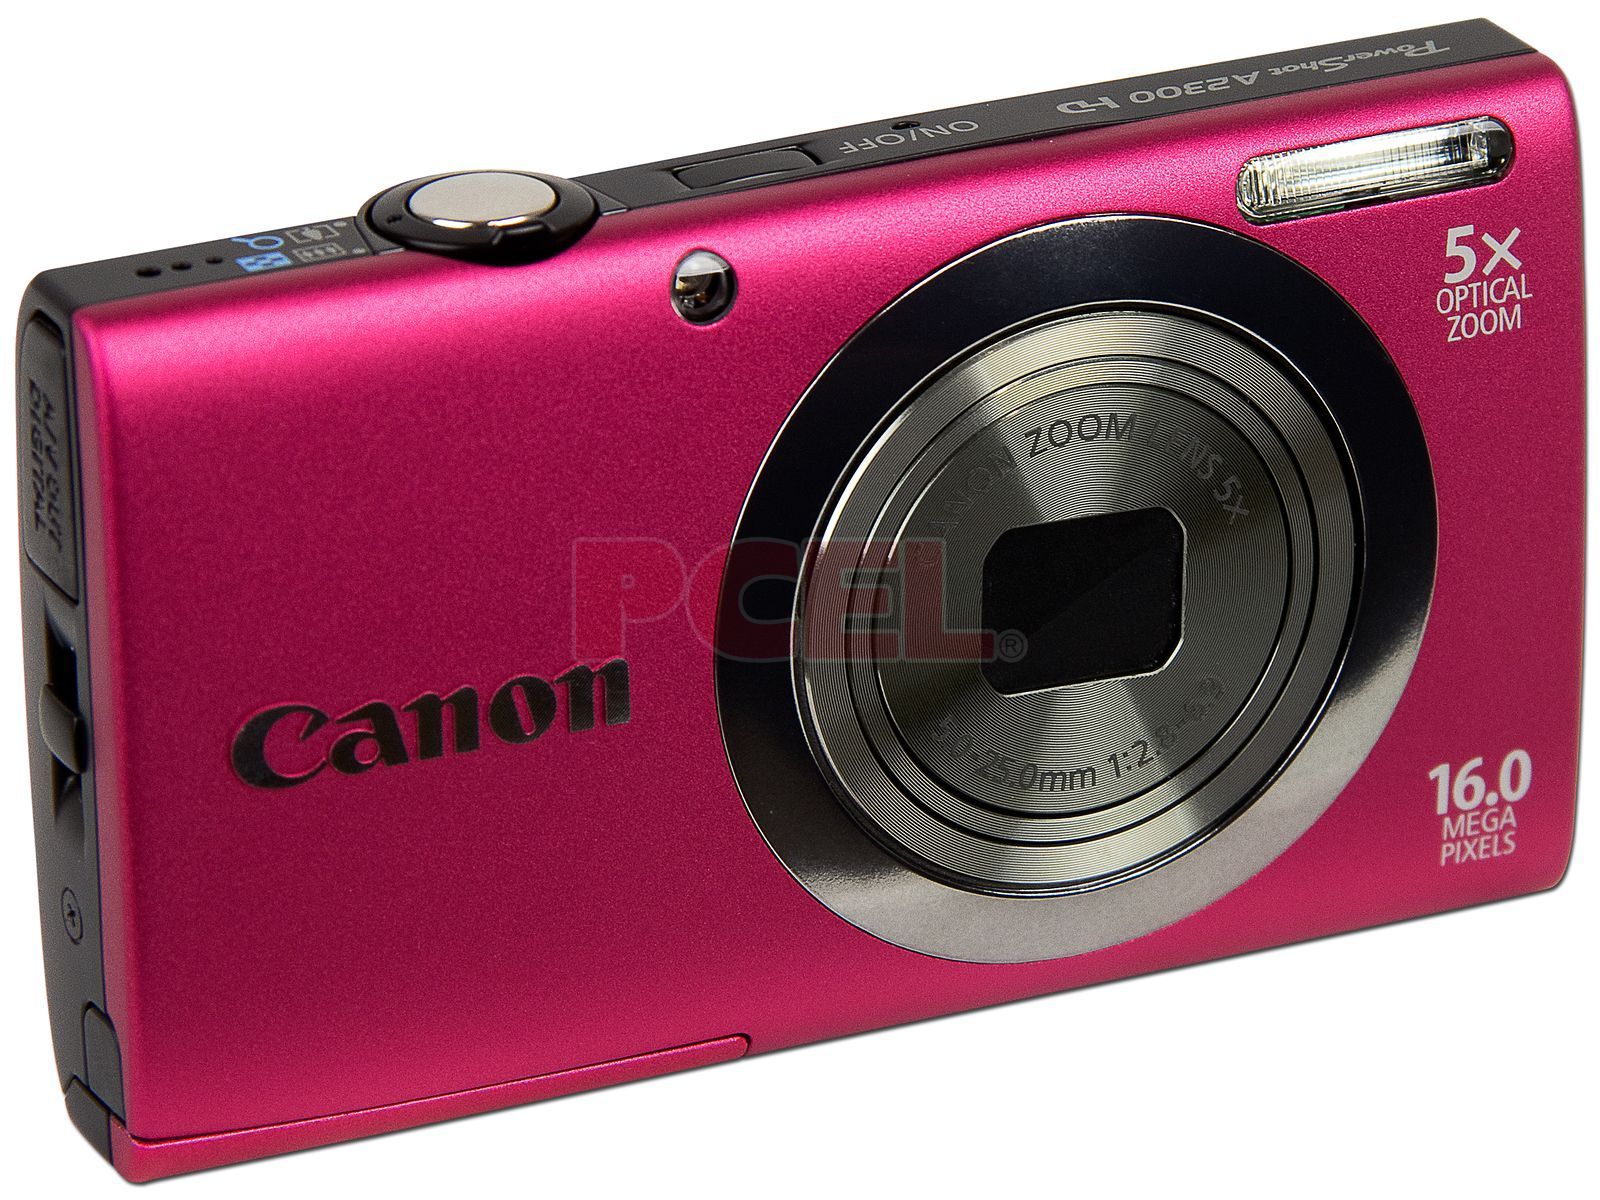 Canon PowerShot A2300 Cámara digital de 16.0 MP con zoom óptico 5x (plata)